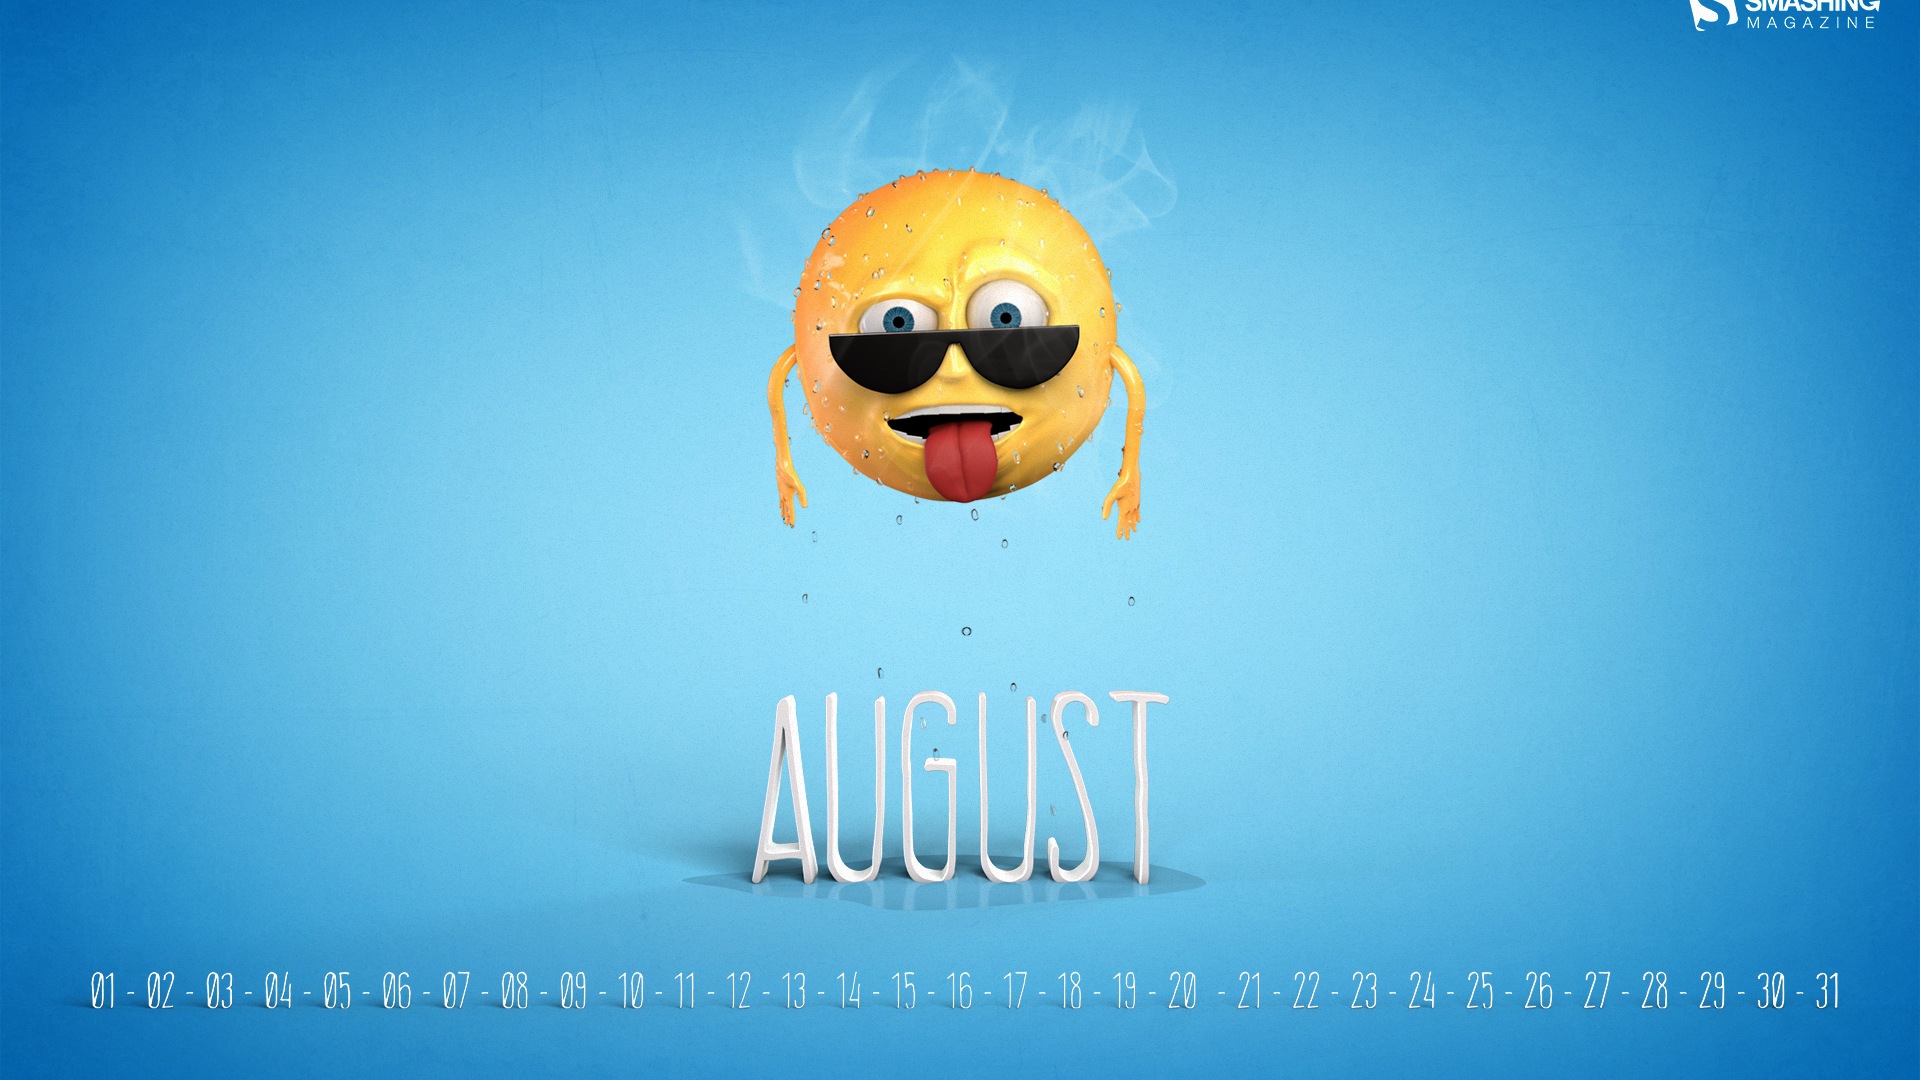 August 2014 calendar wallpaper (2) #11 - 1920x1080